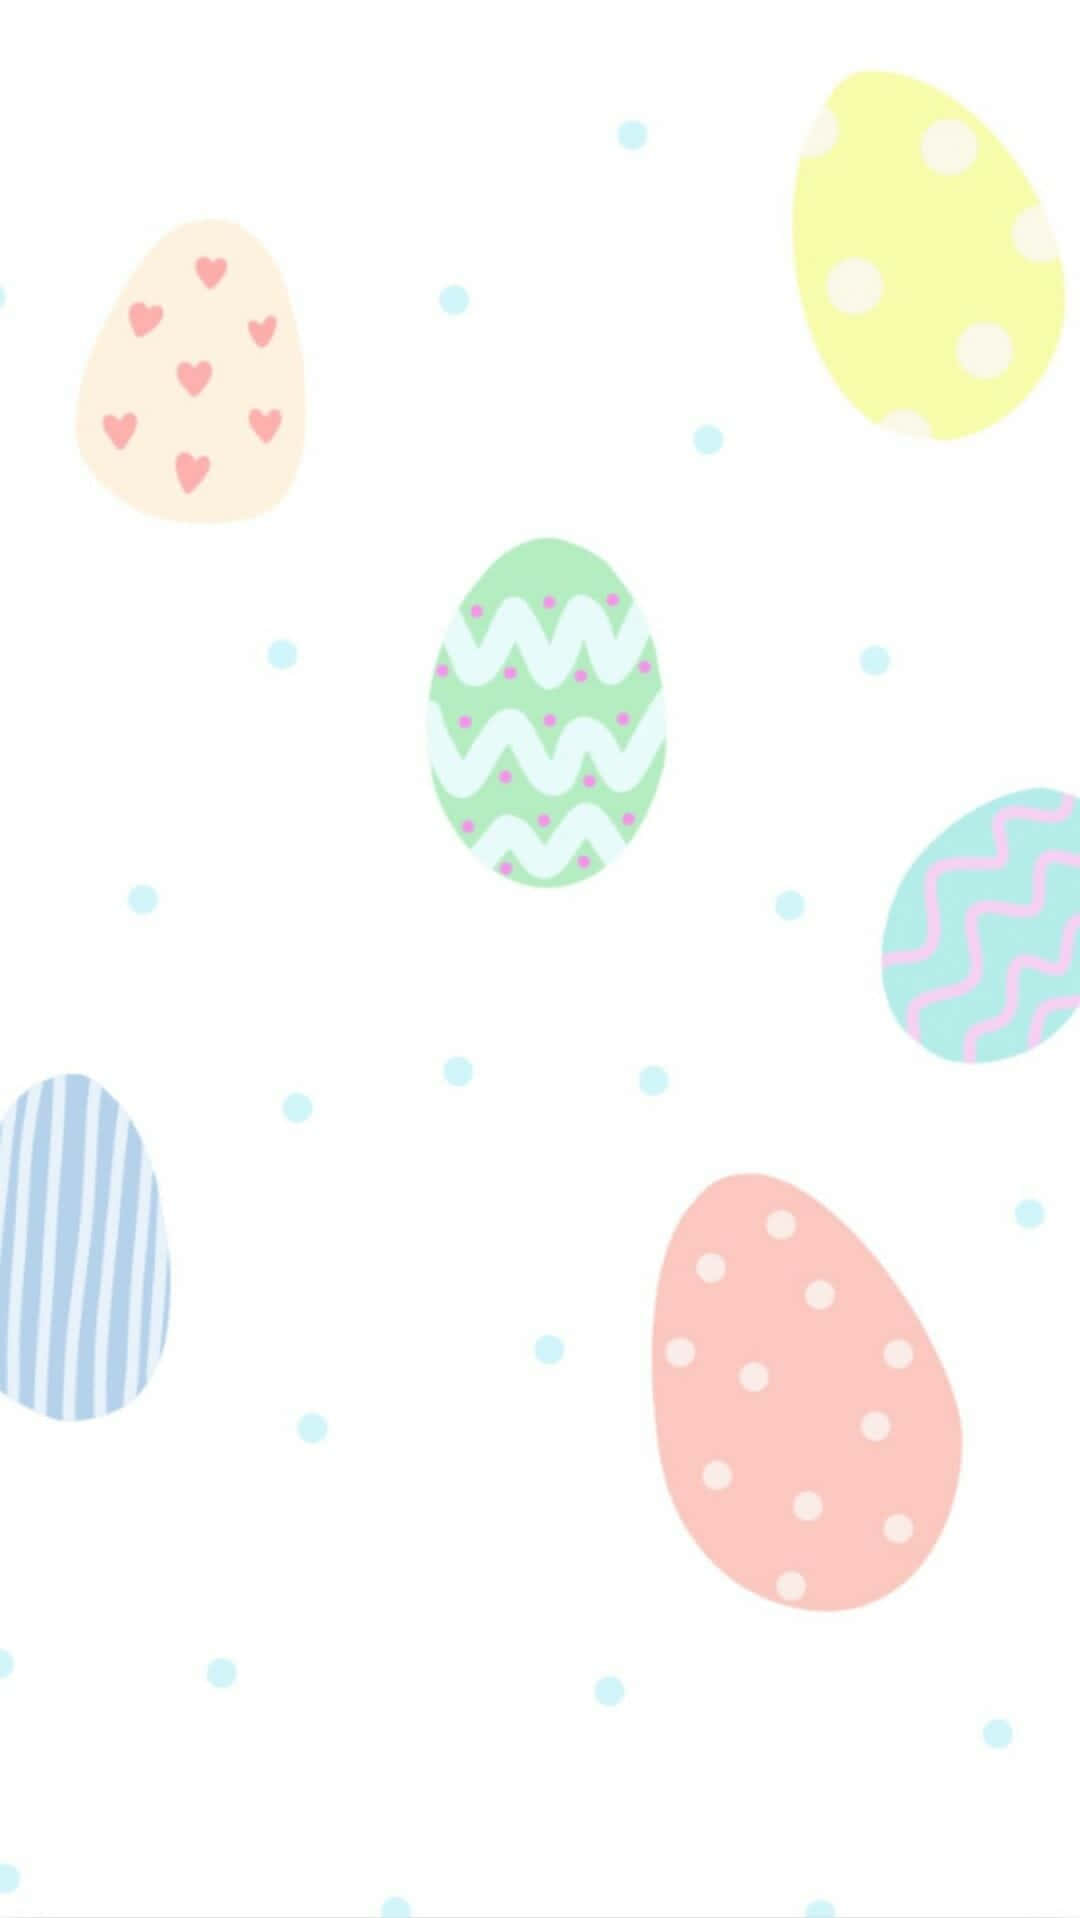 Fejr påske i år med det søde kanin-inspirerede iphone-design! Wallpaper